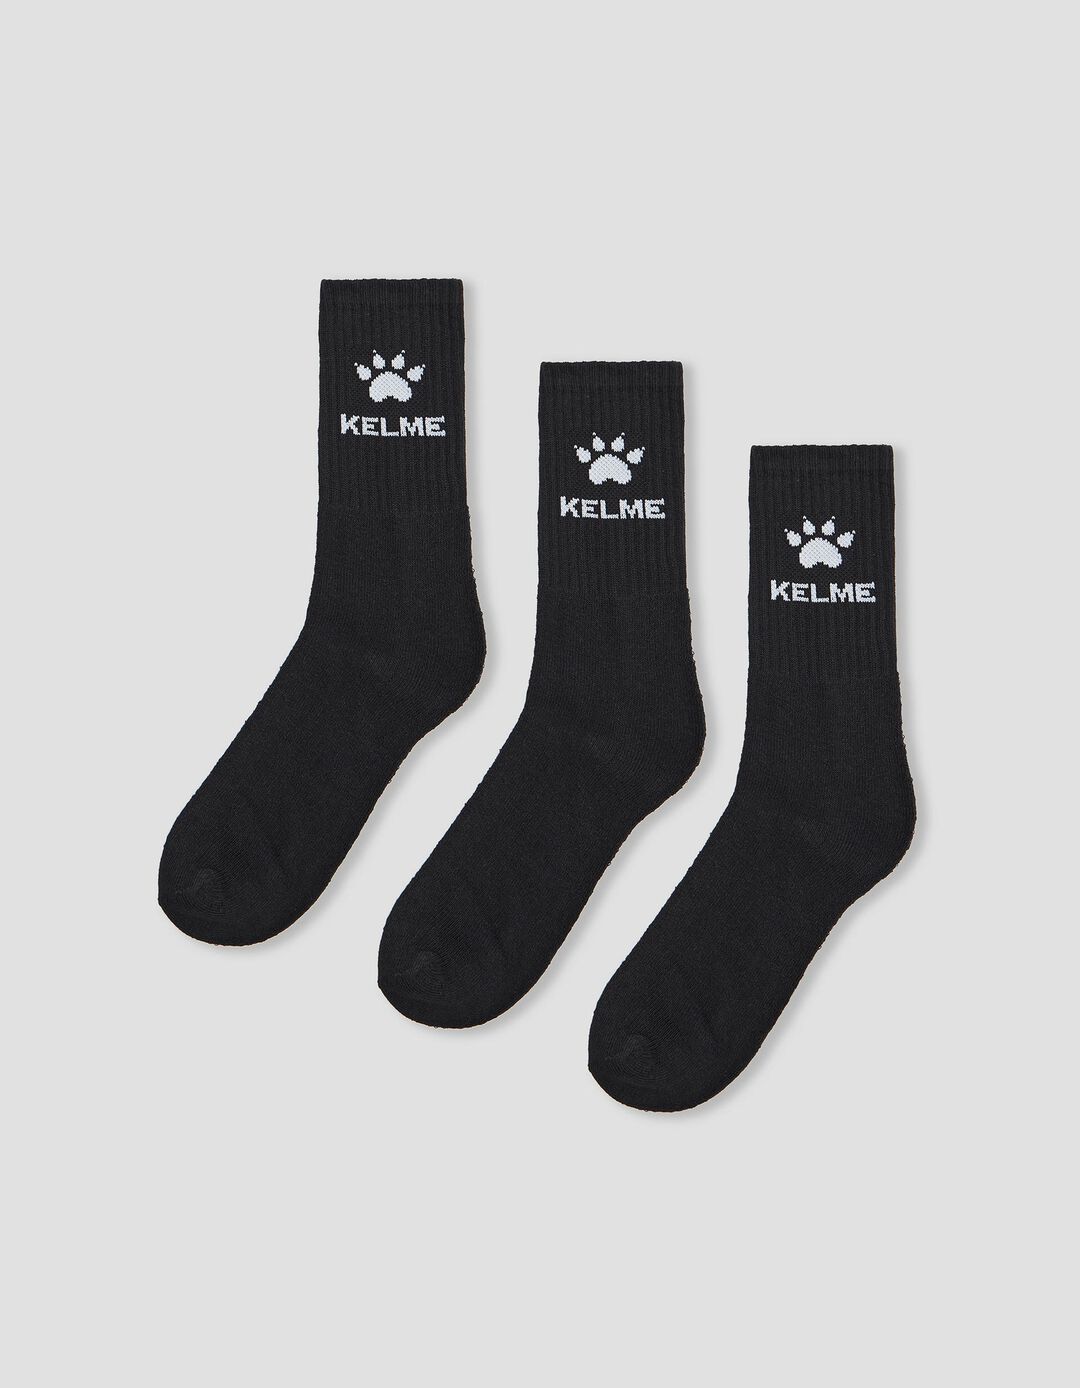 3 'Kelme' Sports Socks Pairs Pack, Men, Black